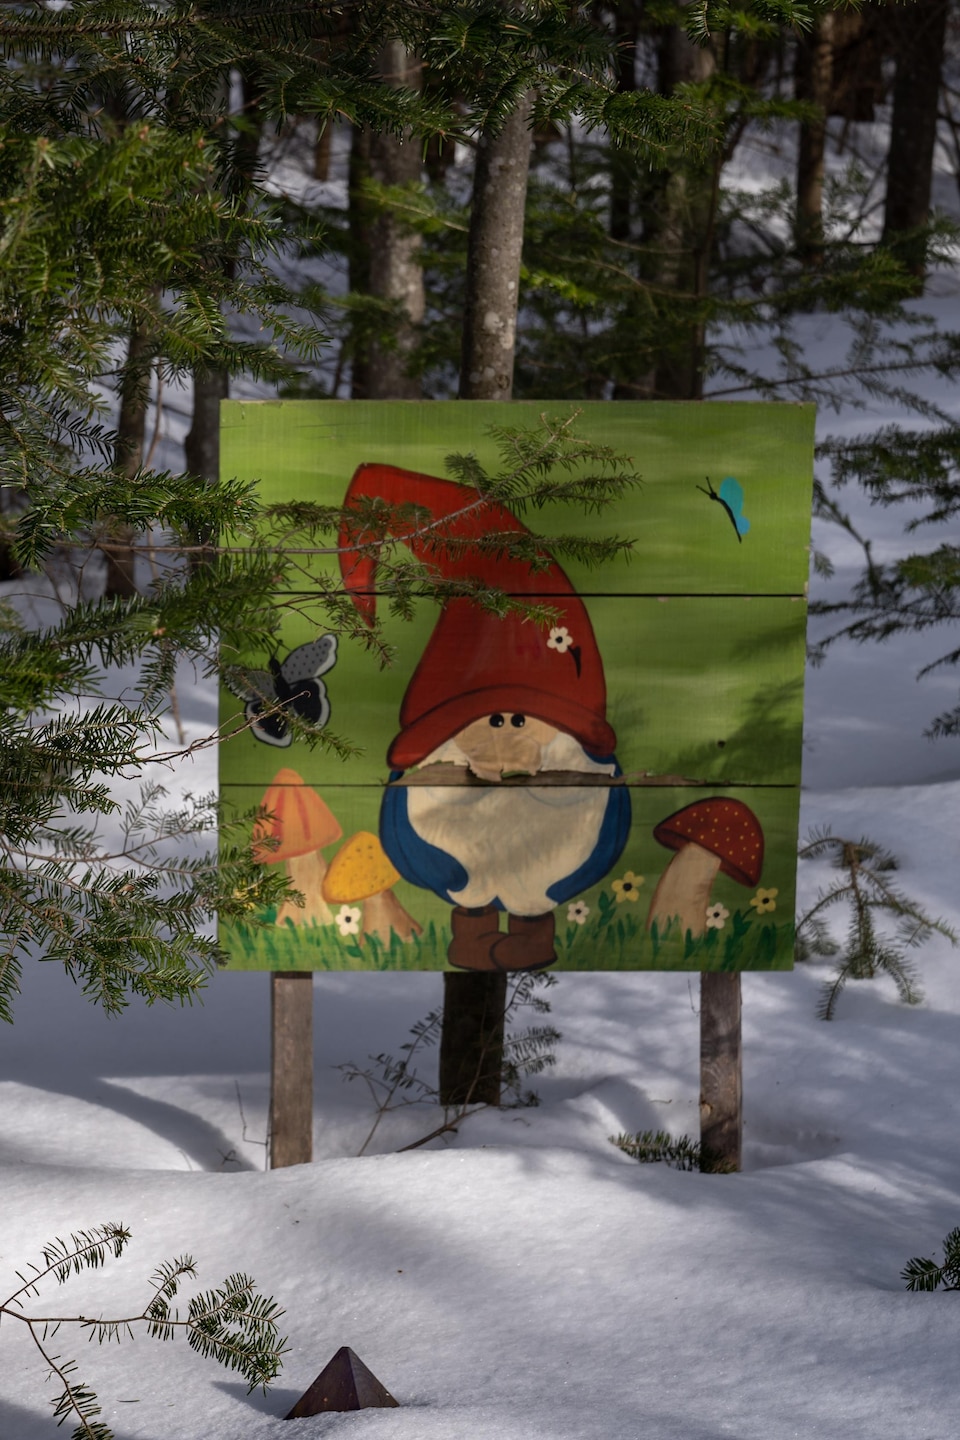 Des décorations installées un peu partout dans la forêt. À droite, il y a une pancarte avec une peinture de lutin et à gauche, il y a une petite cage d'oiseau rouge accrochée à un arbre.